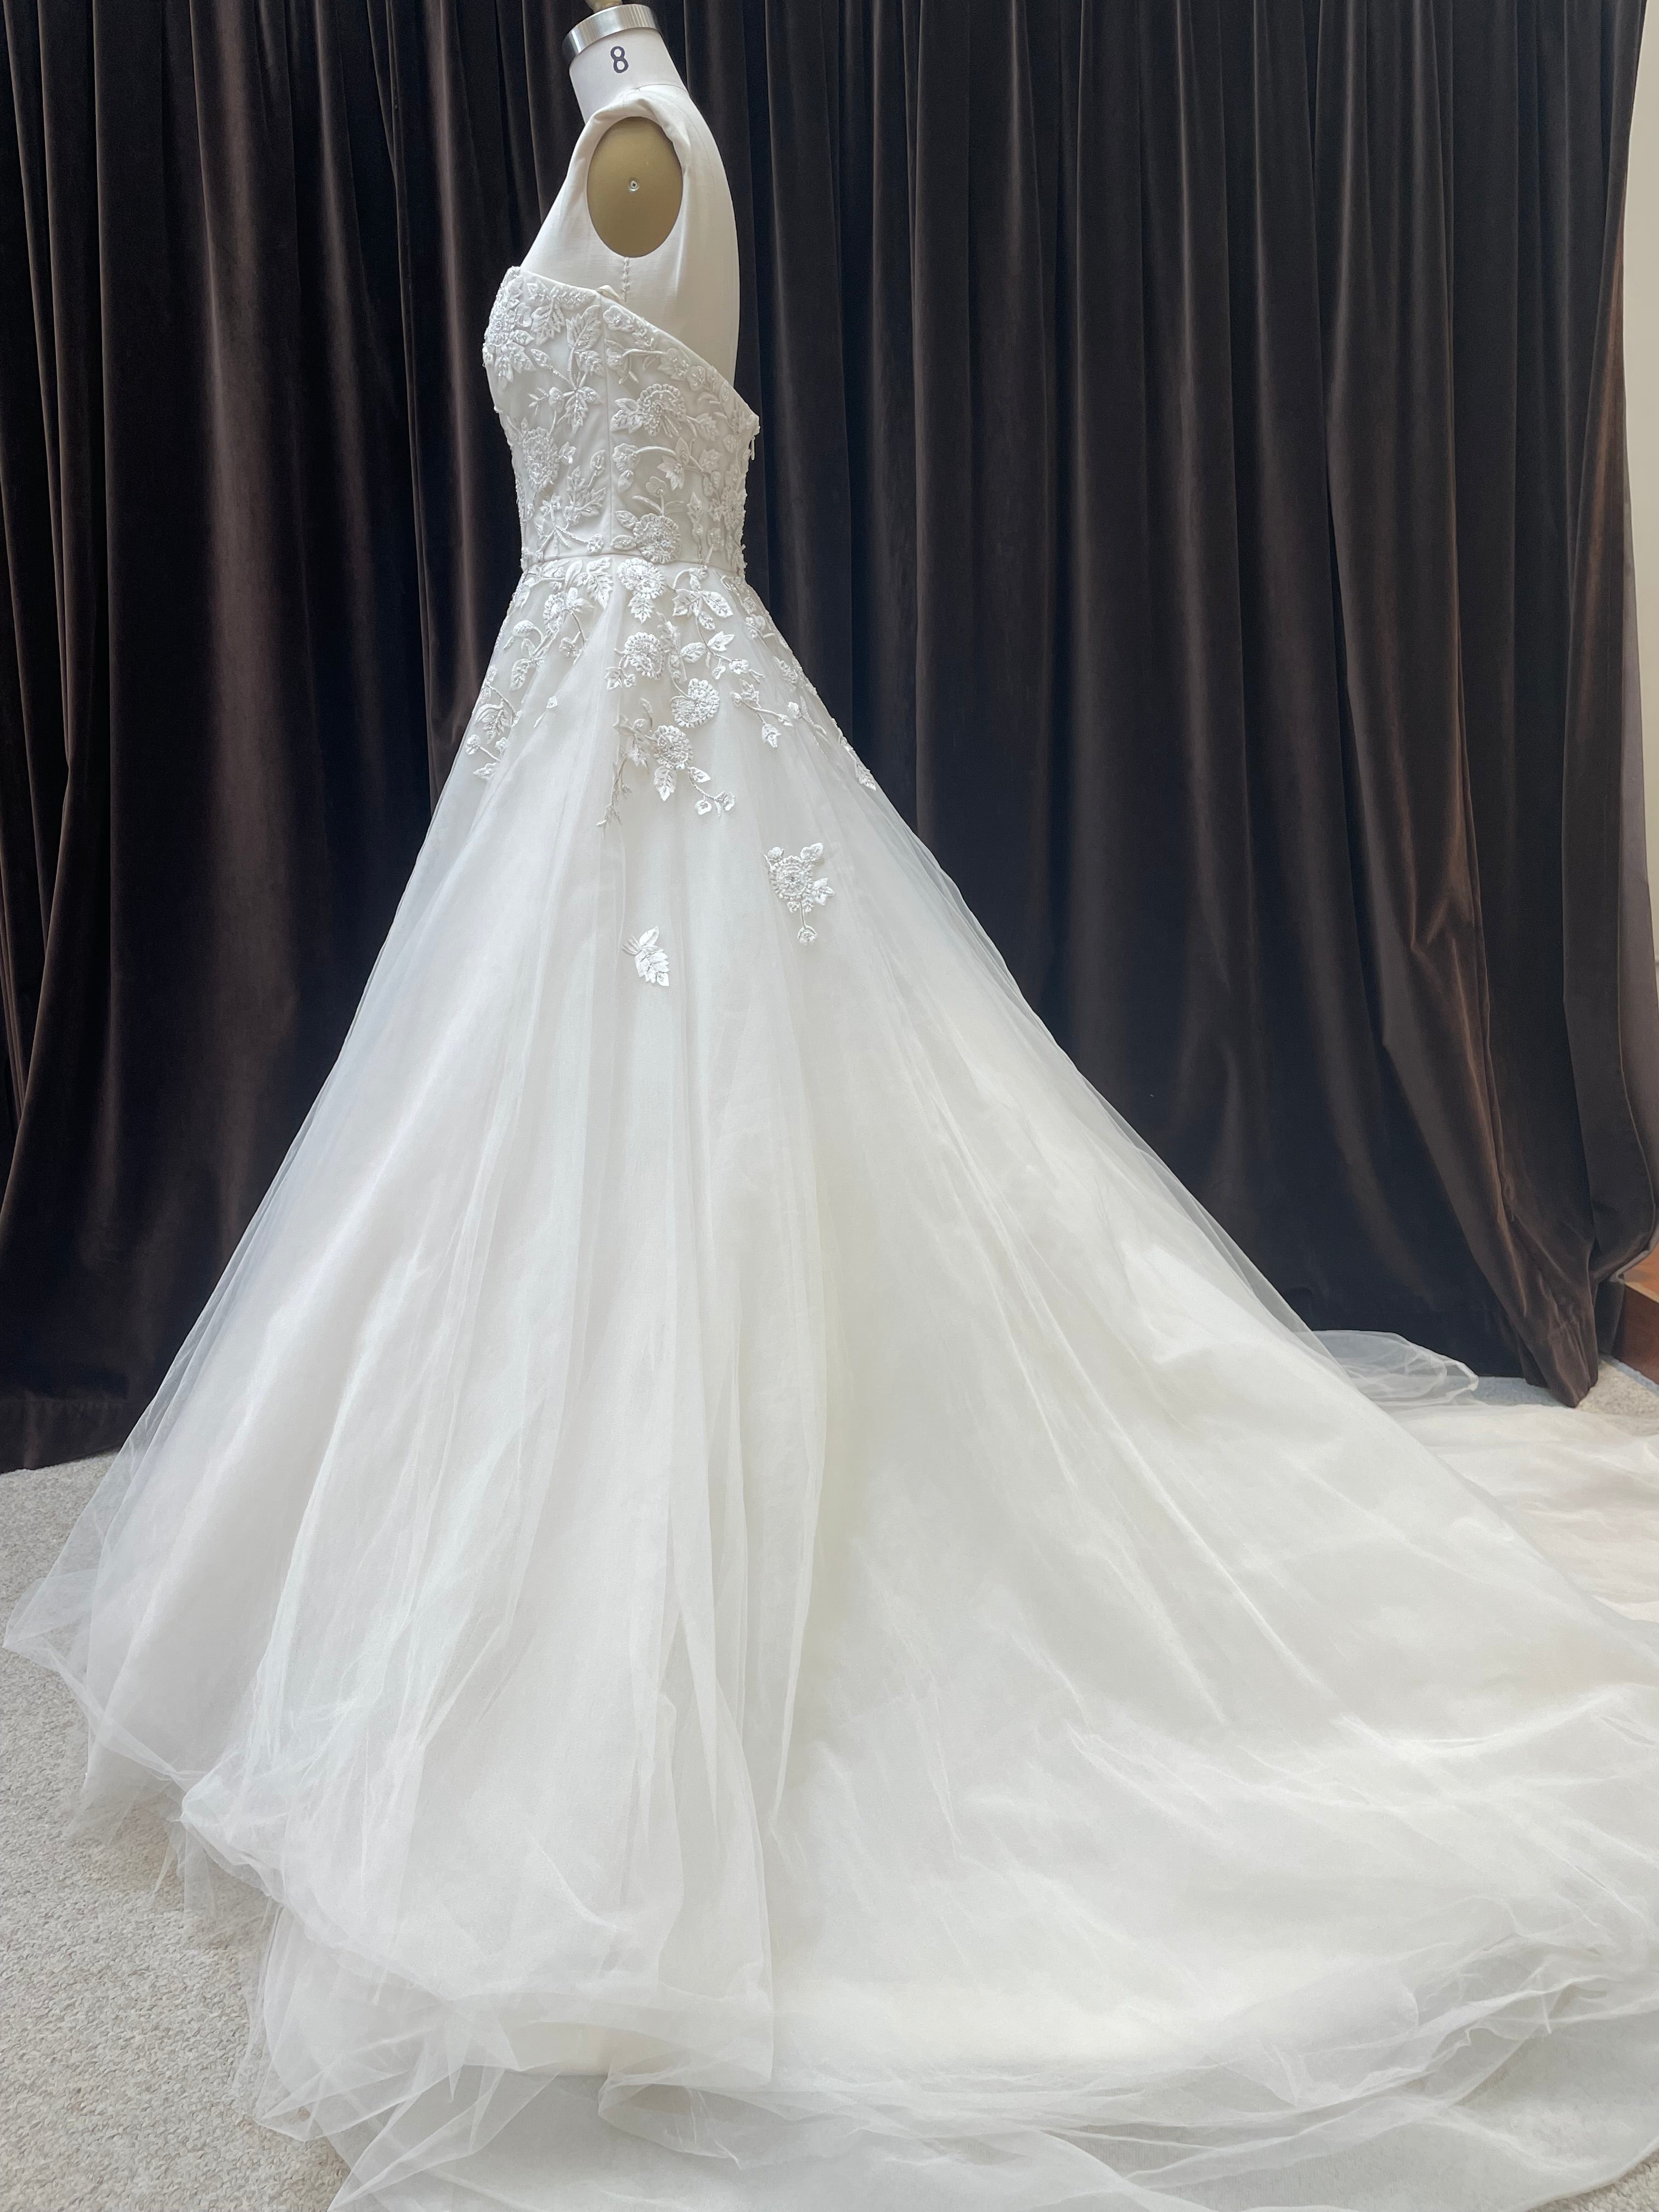 GC#35321 - Allison Webb CeCe Wedding Dress in Size 10